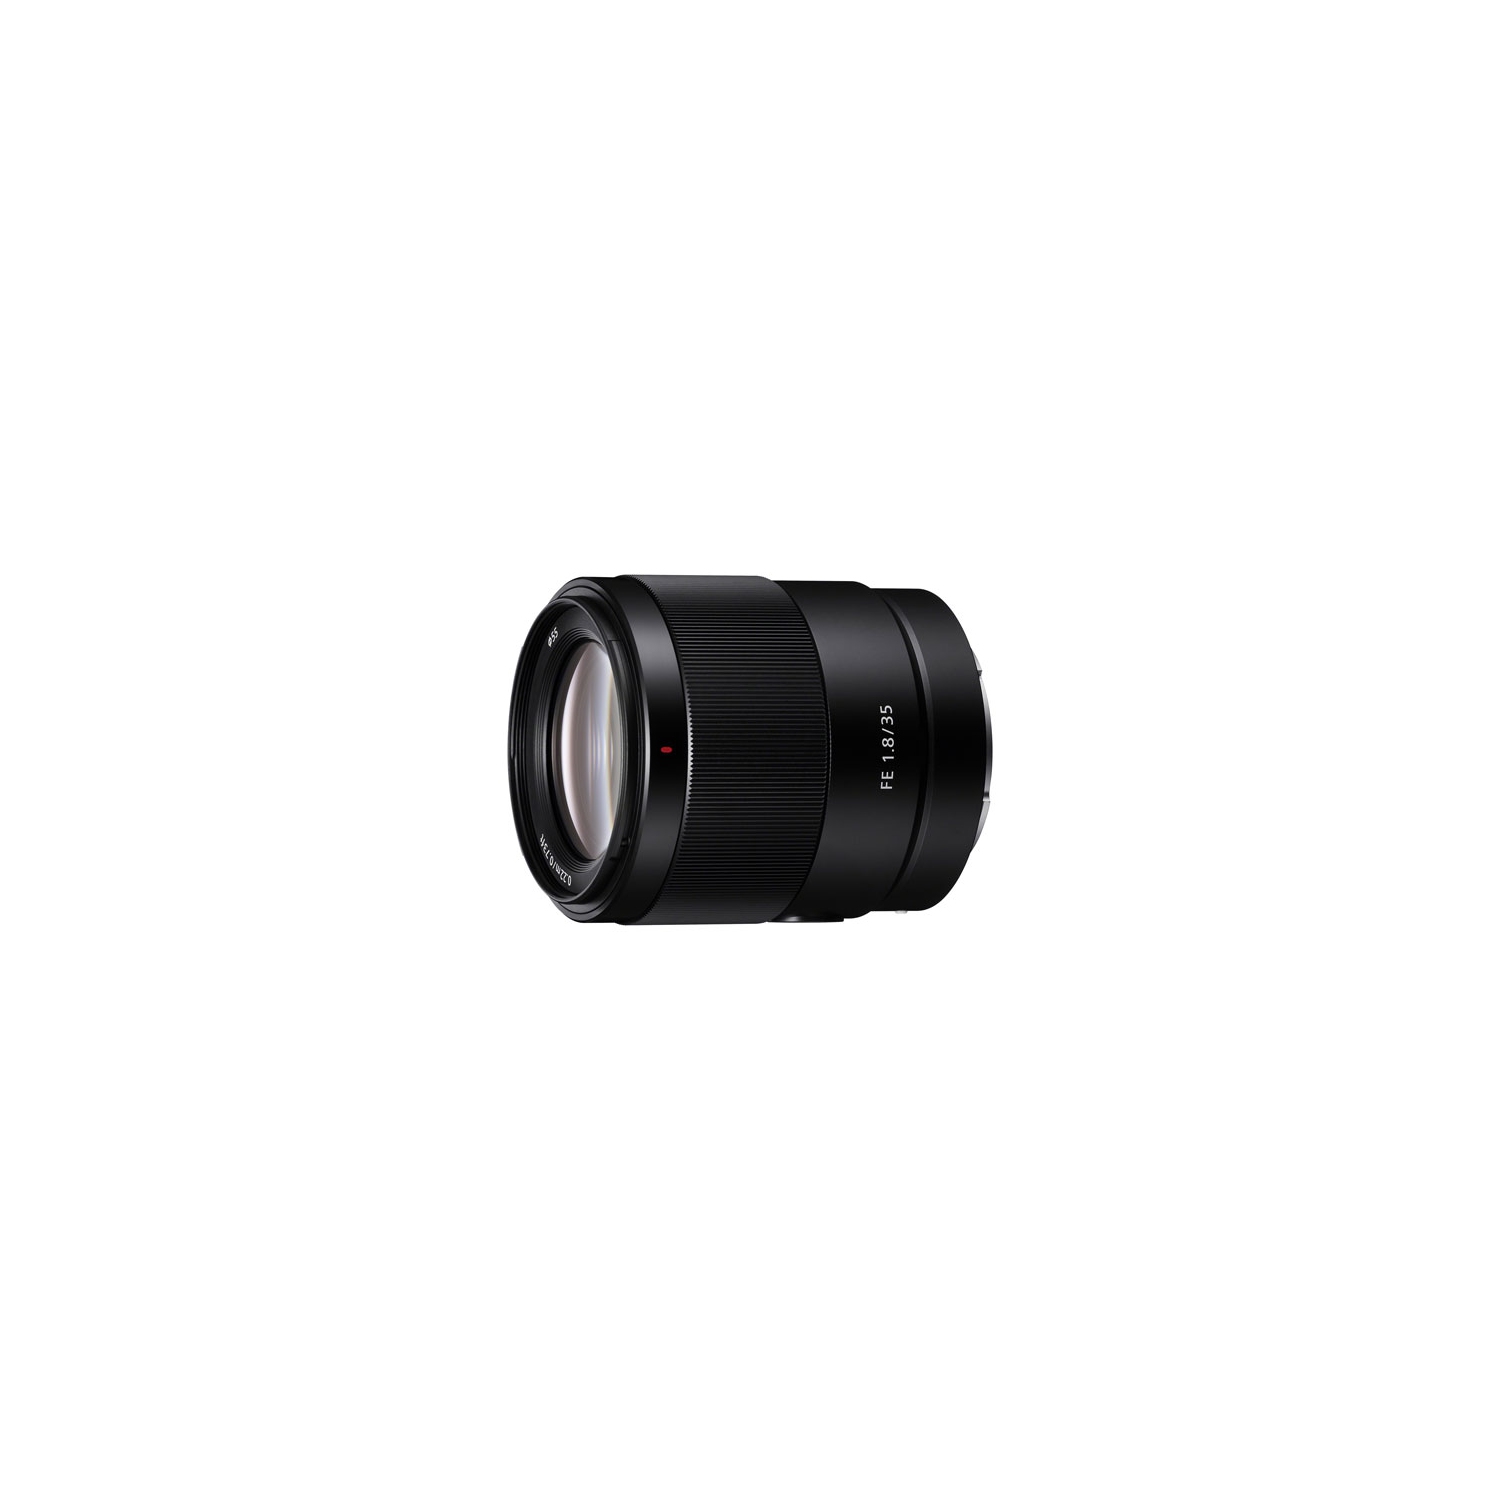 Sony E-Mount Full-Frame FE 35mm f/1.8 Wide Angle Prime Lens - Open Box